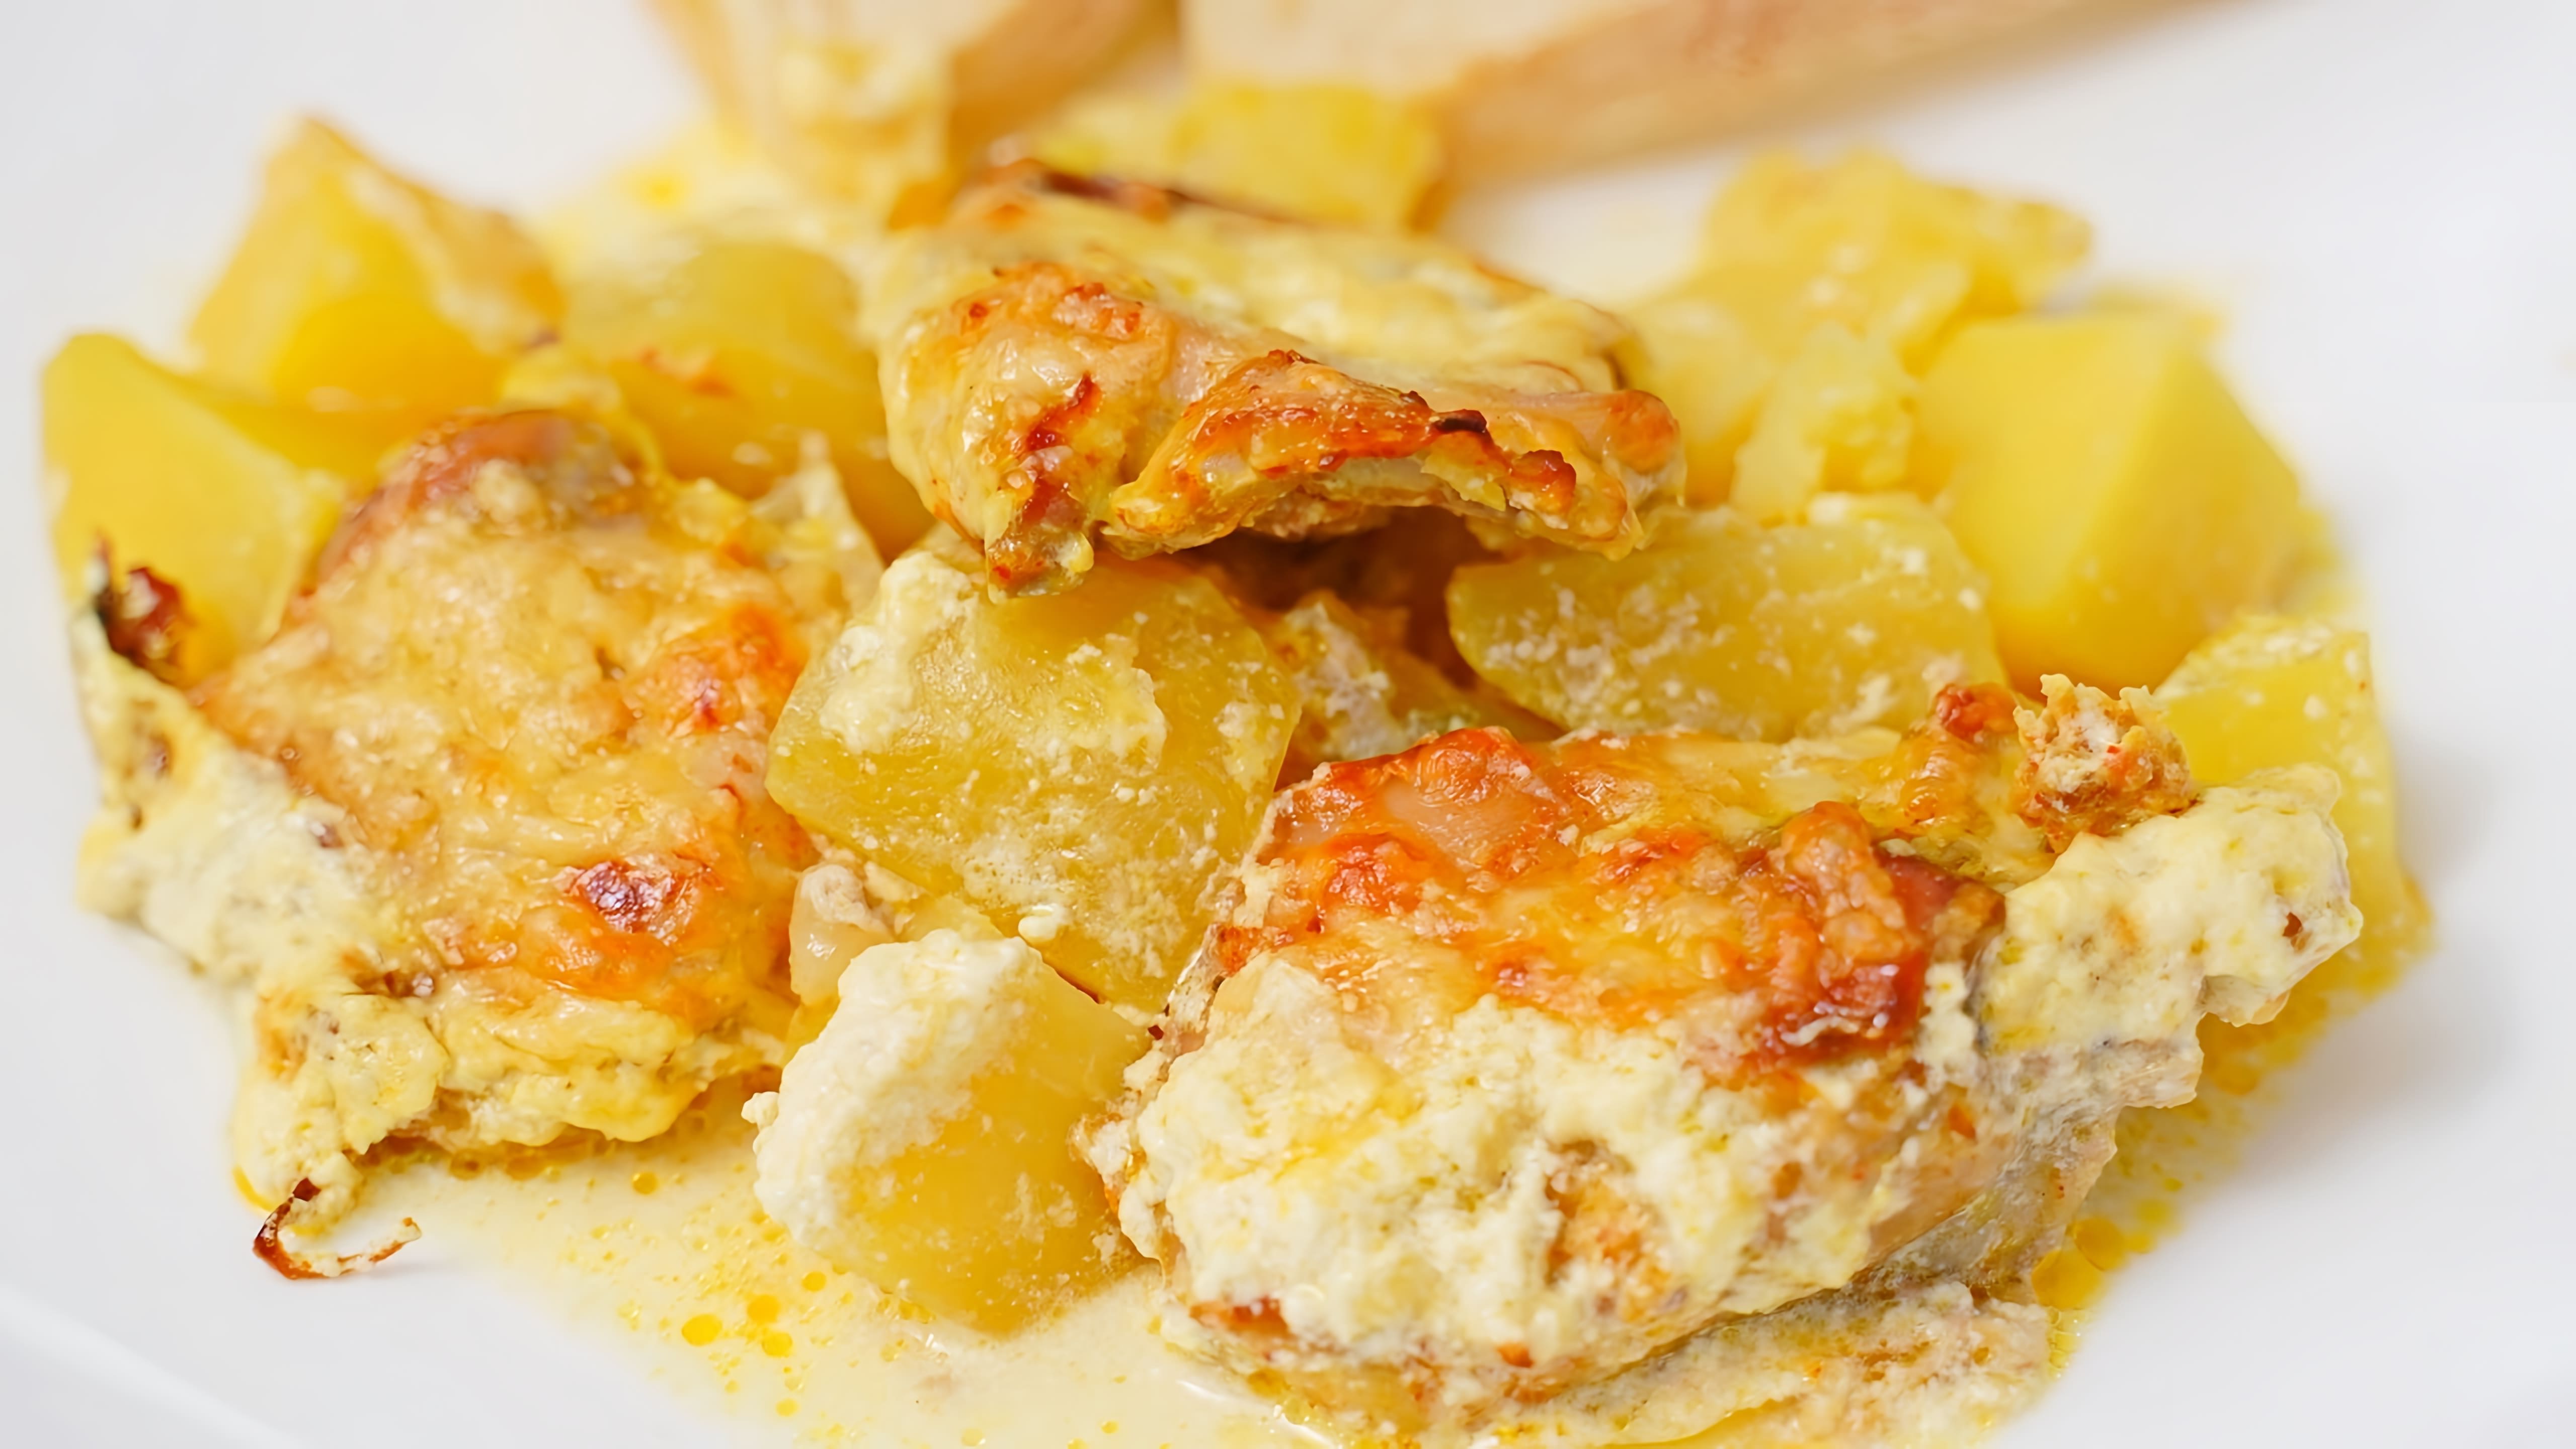 Видео рецепт простого и вкусного блюда из курицы и картофеля, которое можно приготовить на обед или ужин